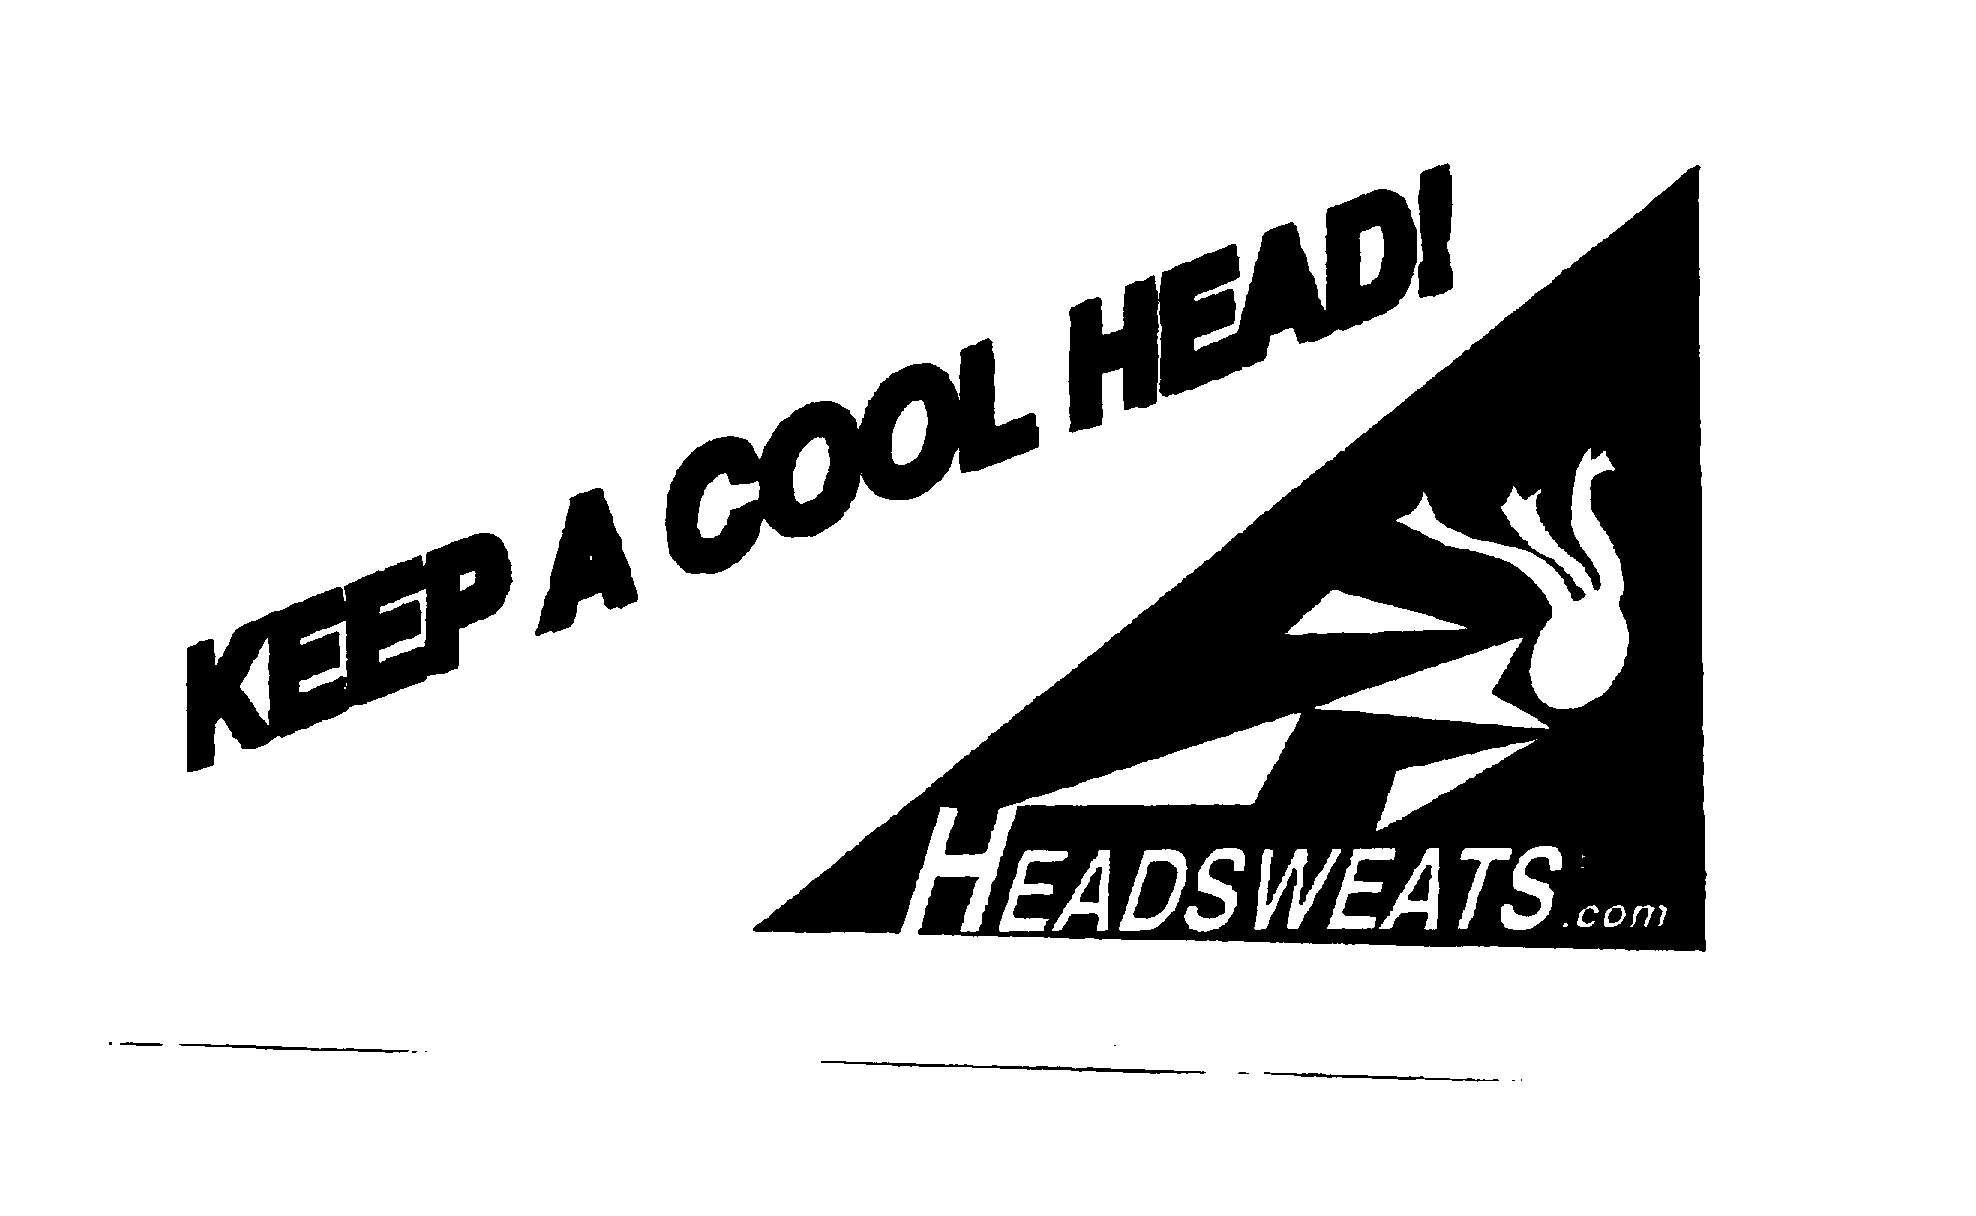  KEEP A COOL HEAD! HEADSWEATS.COM